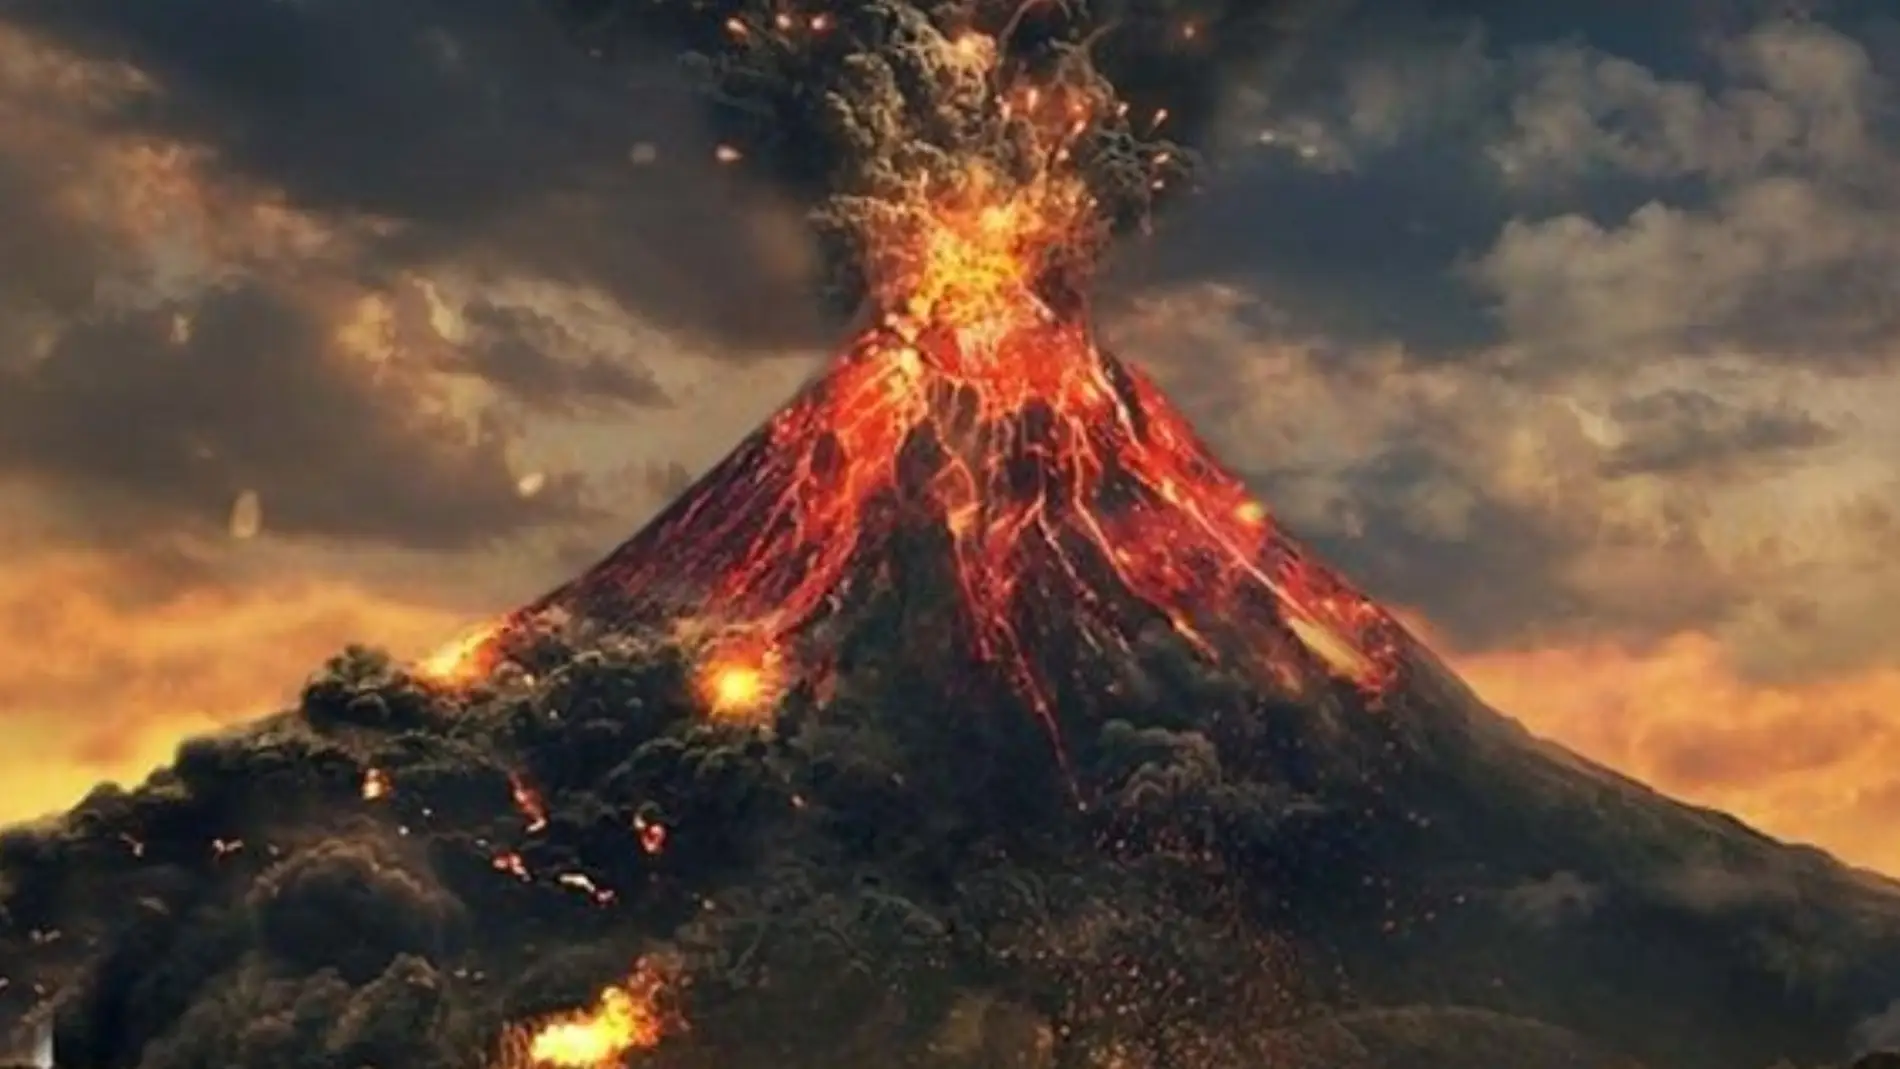 Año 79 el volcán Vesubio entra en erupción, arrasando las ciudades romanas de Pompeya, Herculano y Estabia      